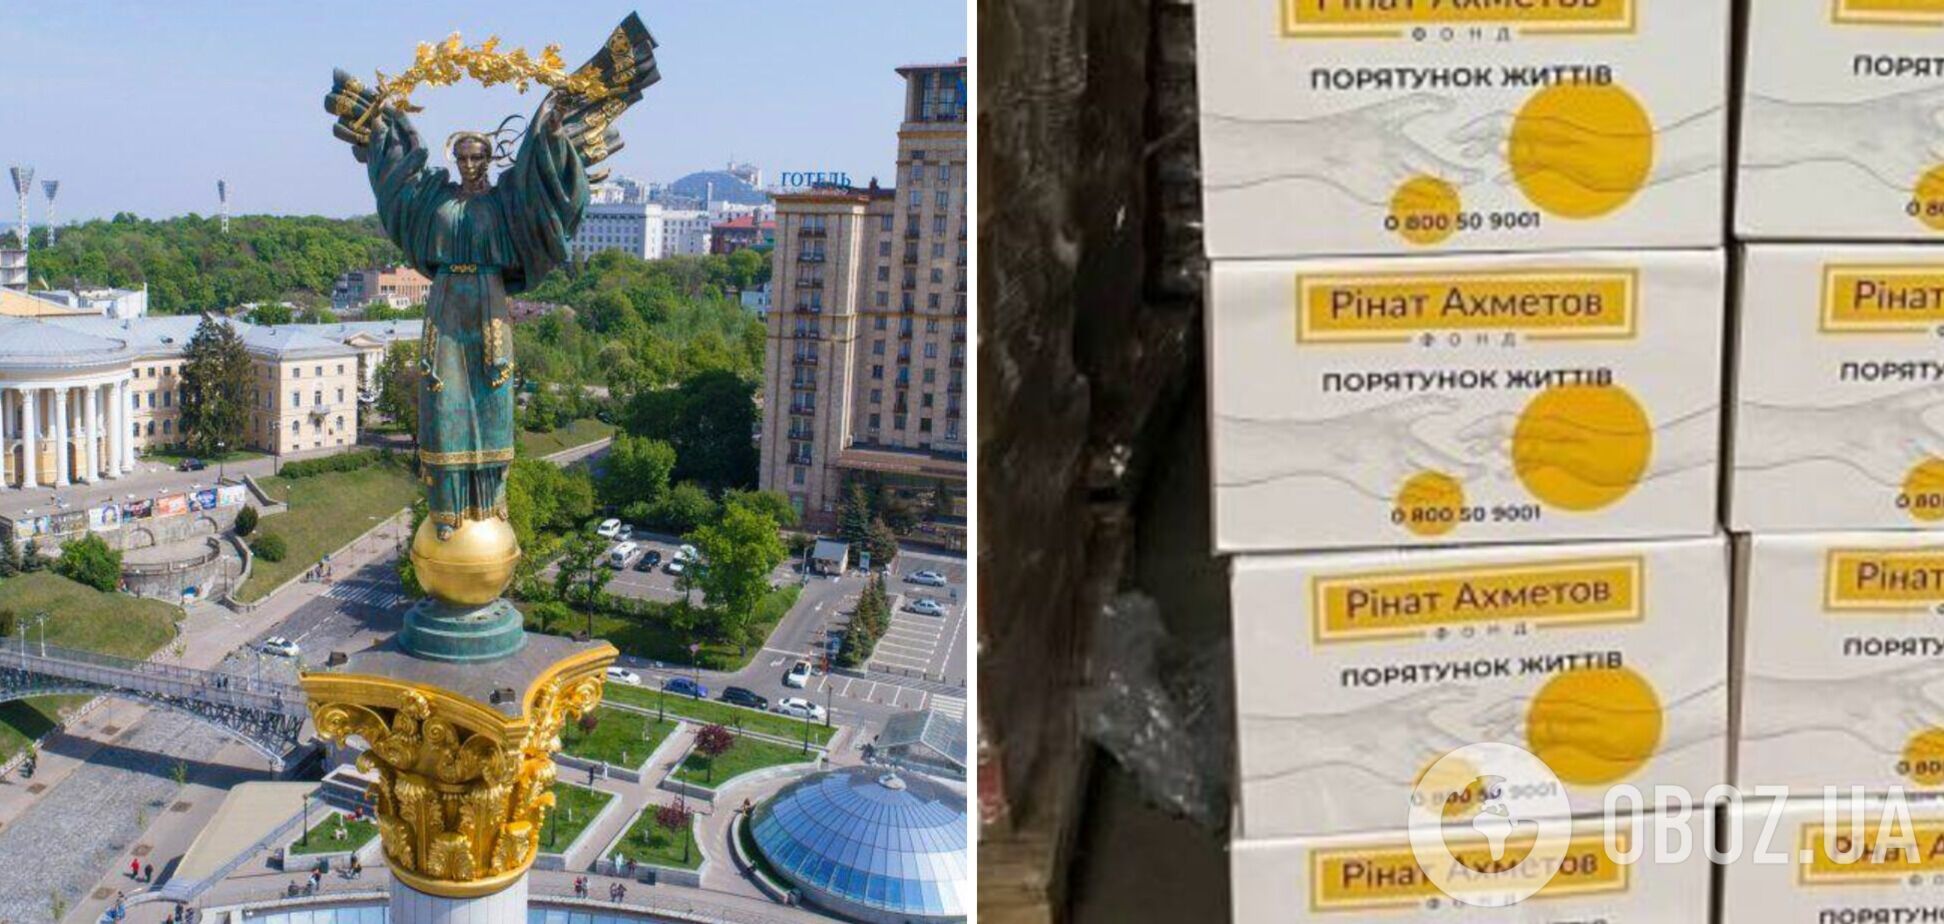 Еще одна партия продуктов отправилась в Киев, – Фонд Рината Ахметова